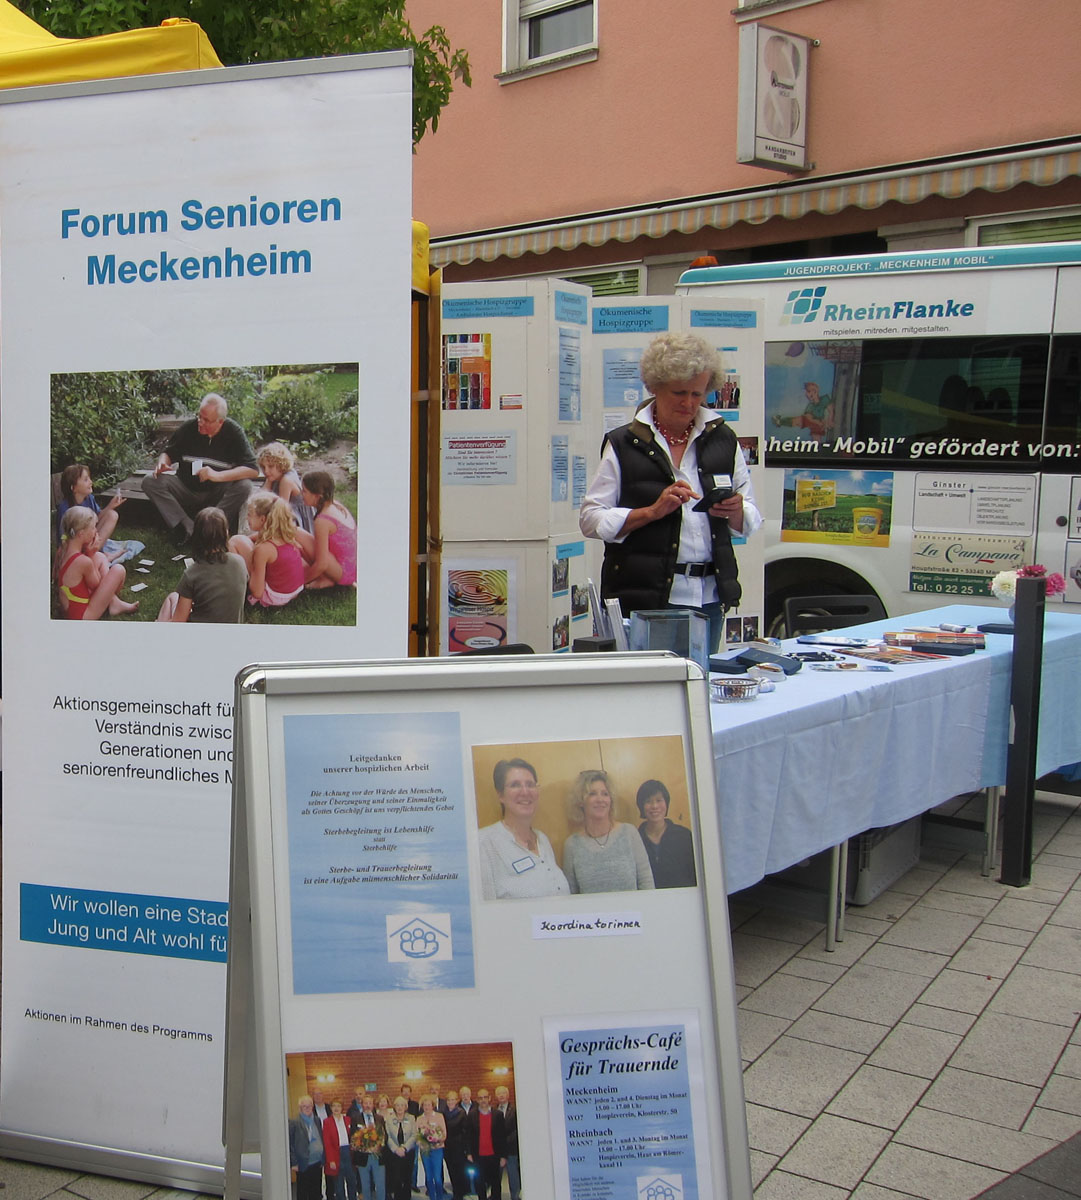 Ökumenische Hospizgruppe e.V. auf dem Altstadtfest in Meckenheim